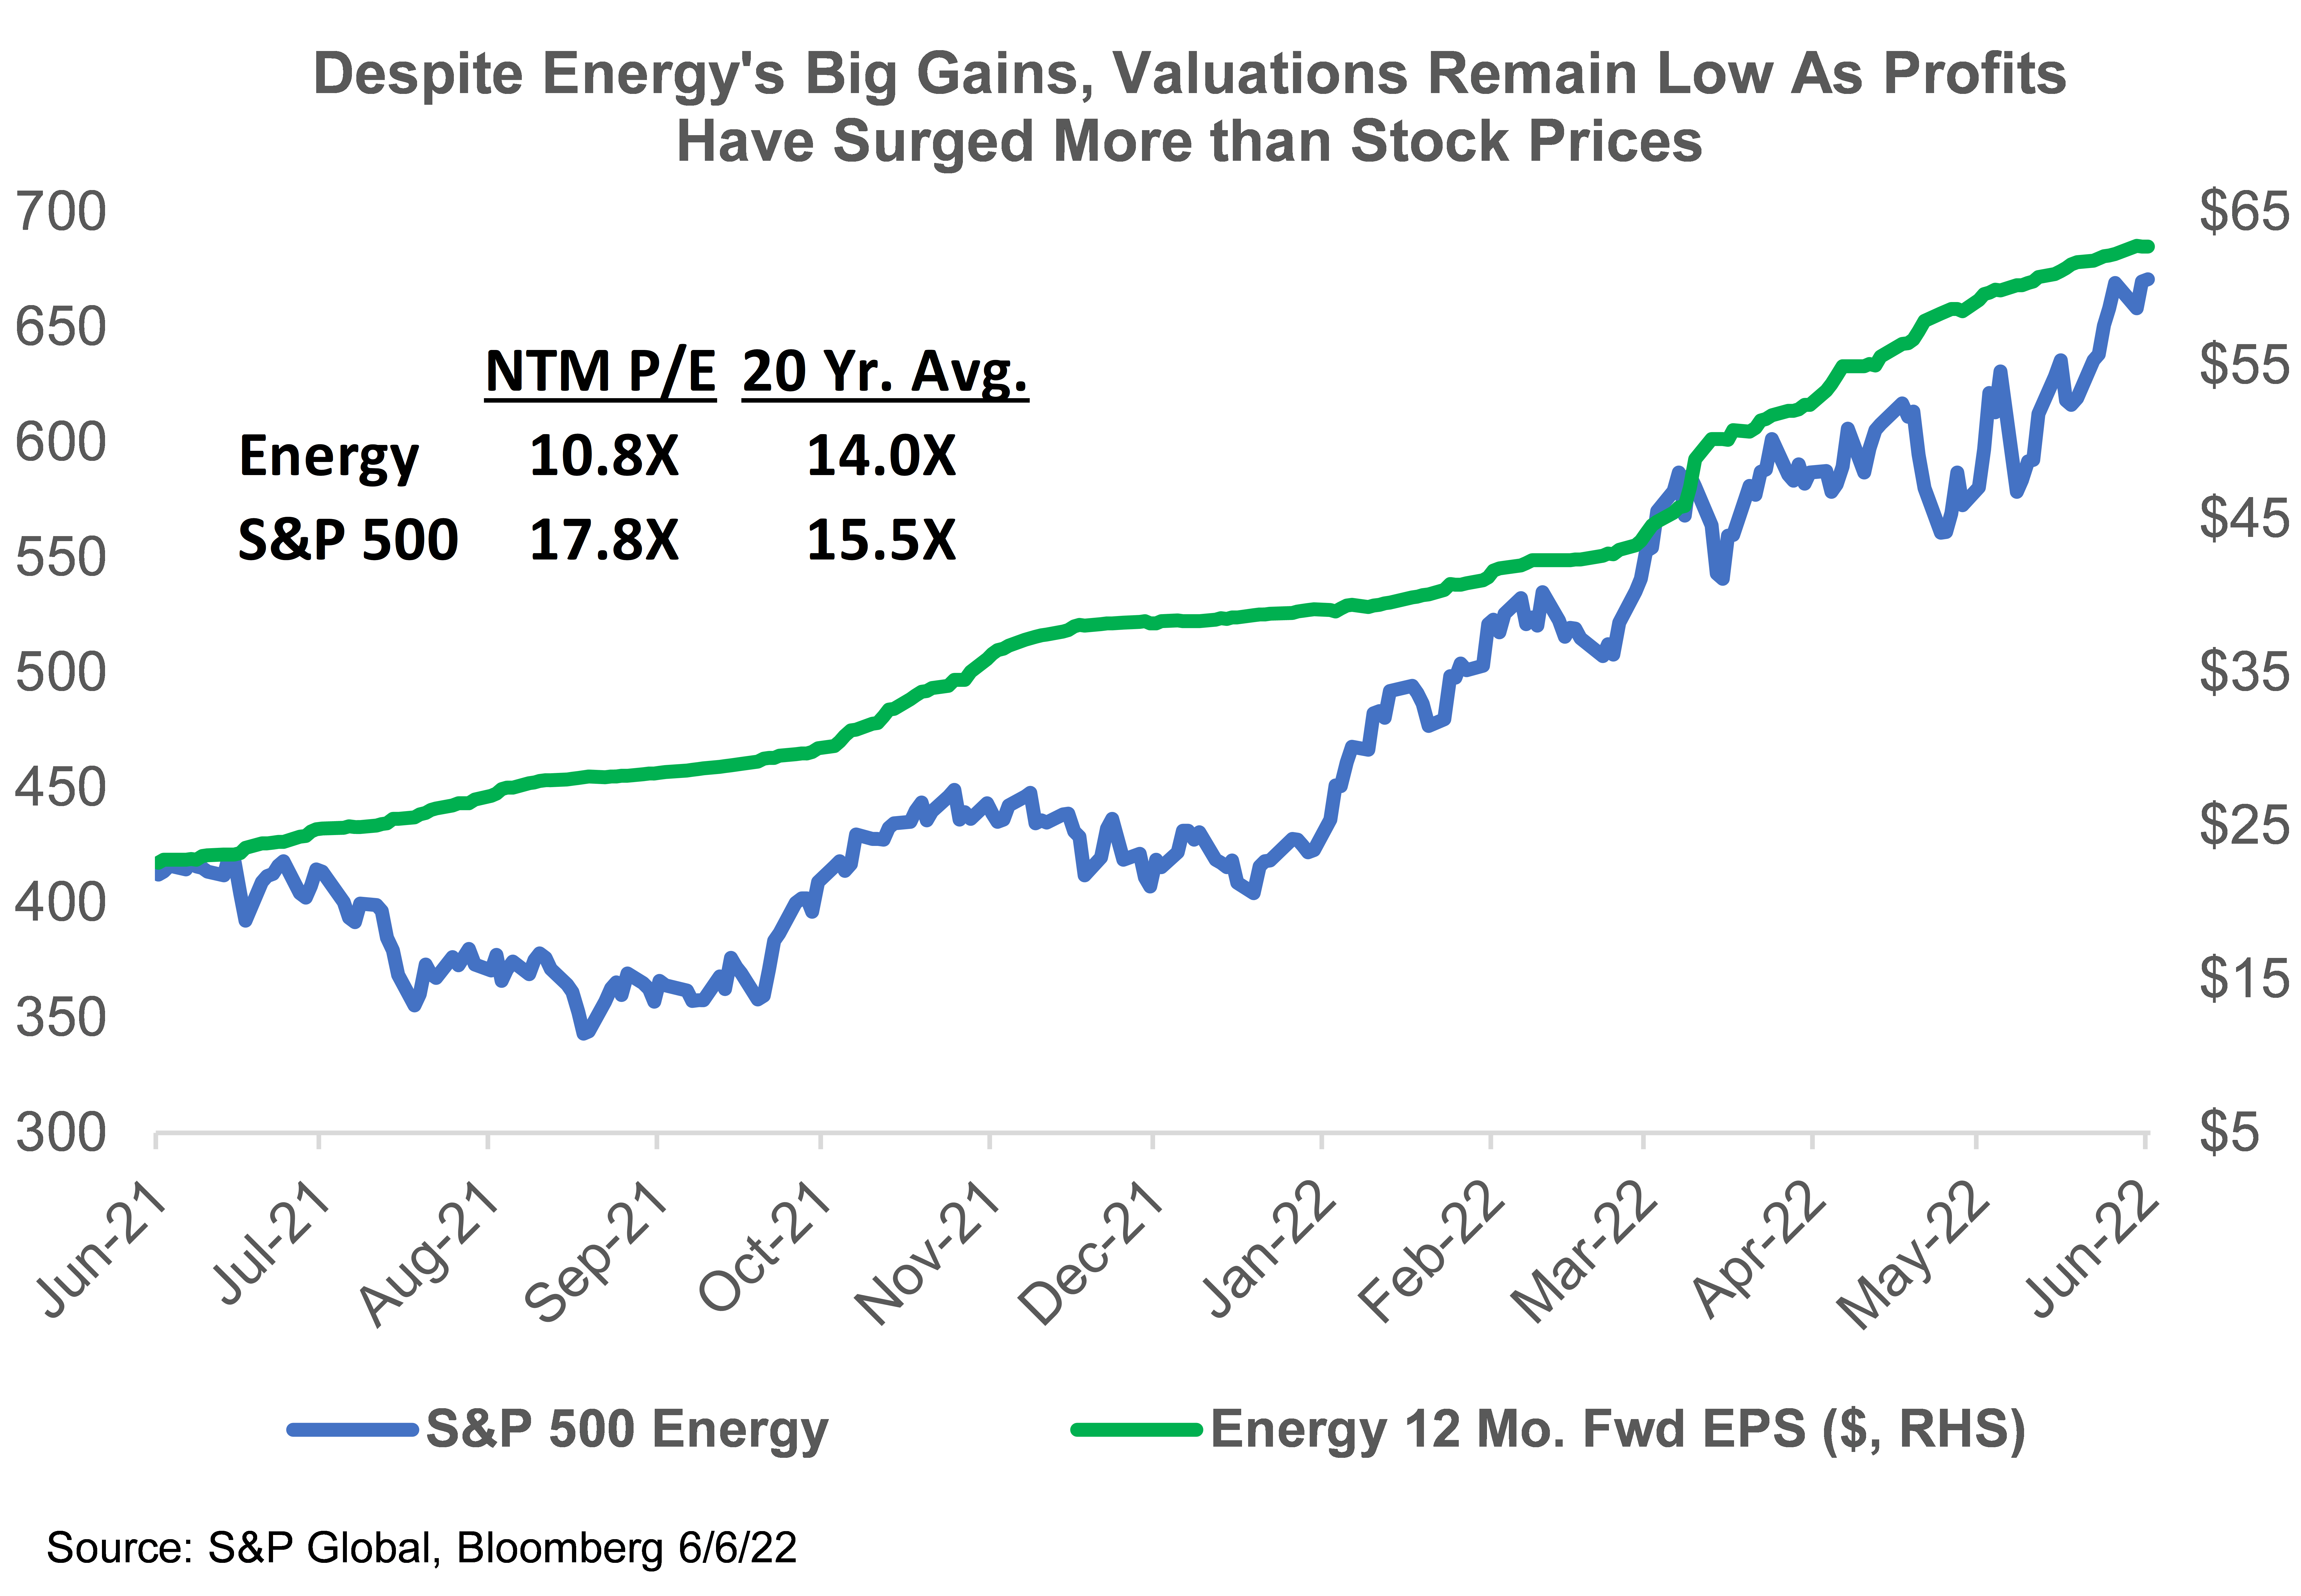 Energy 12 Month Fwd EPS vs S&P 500